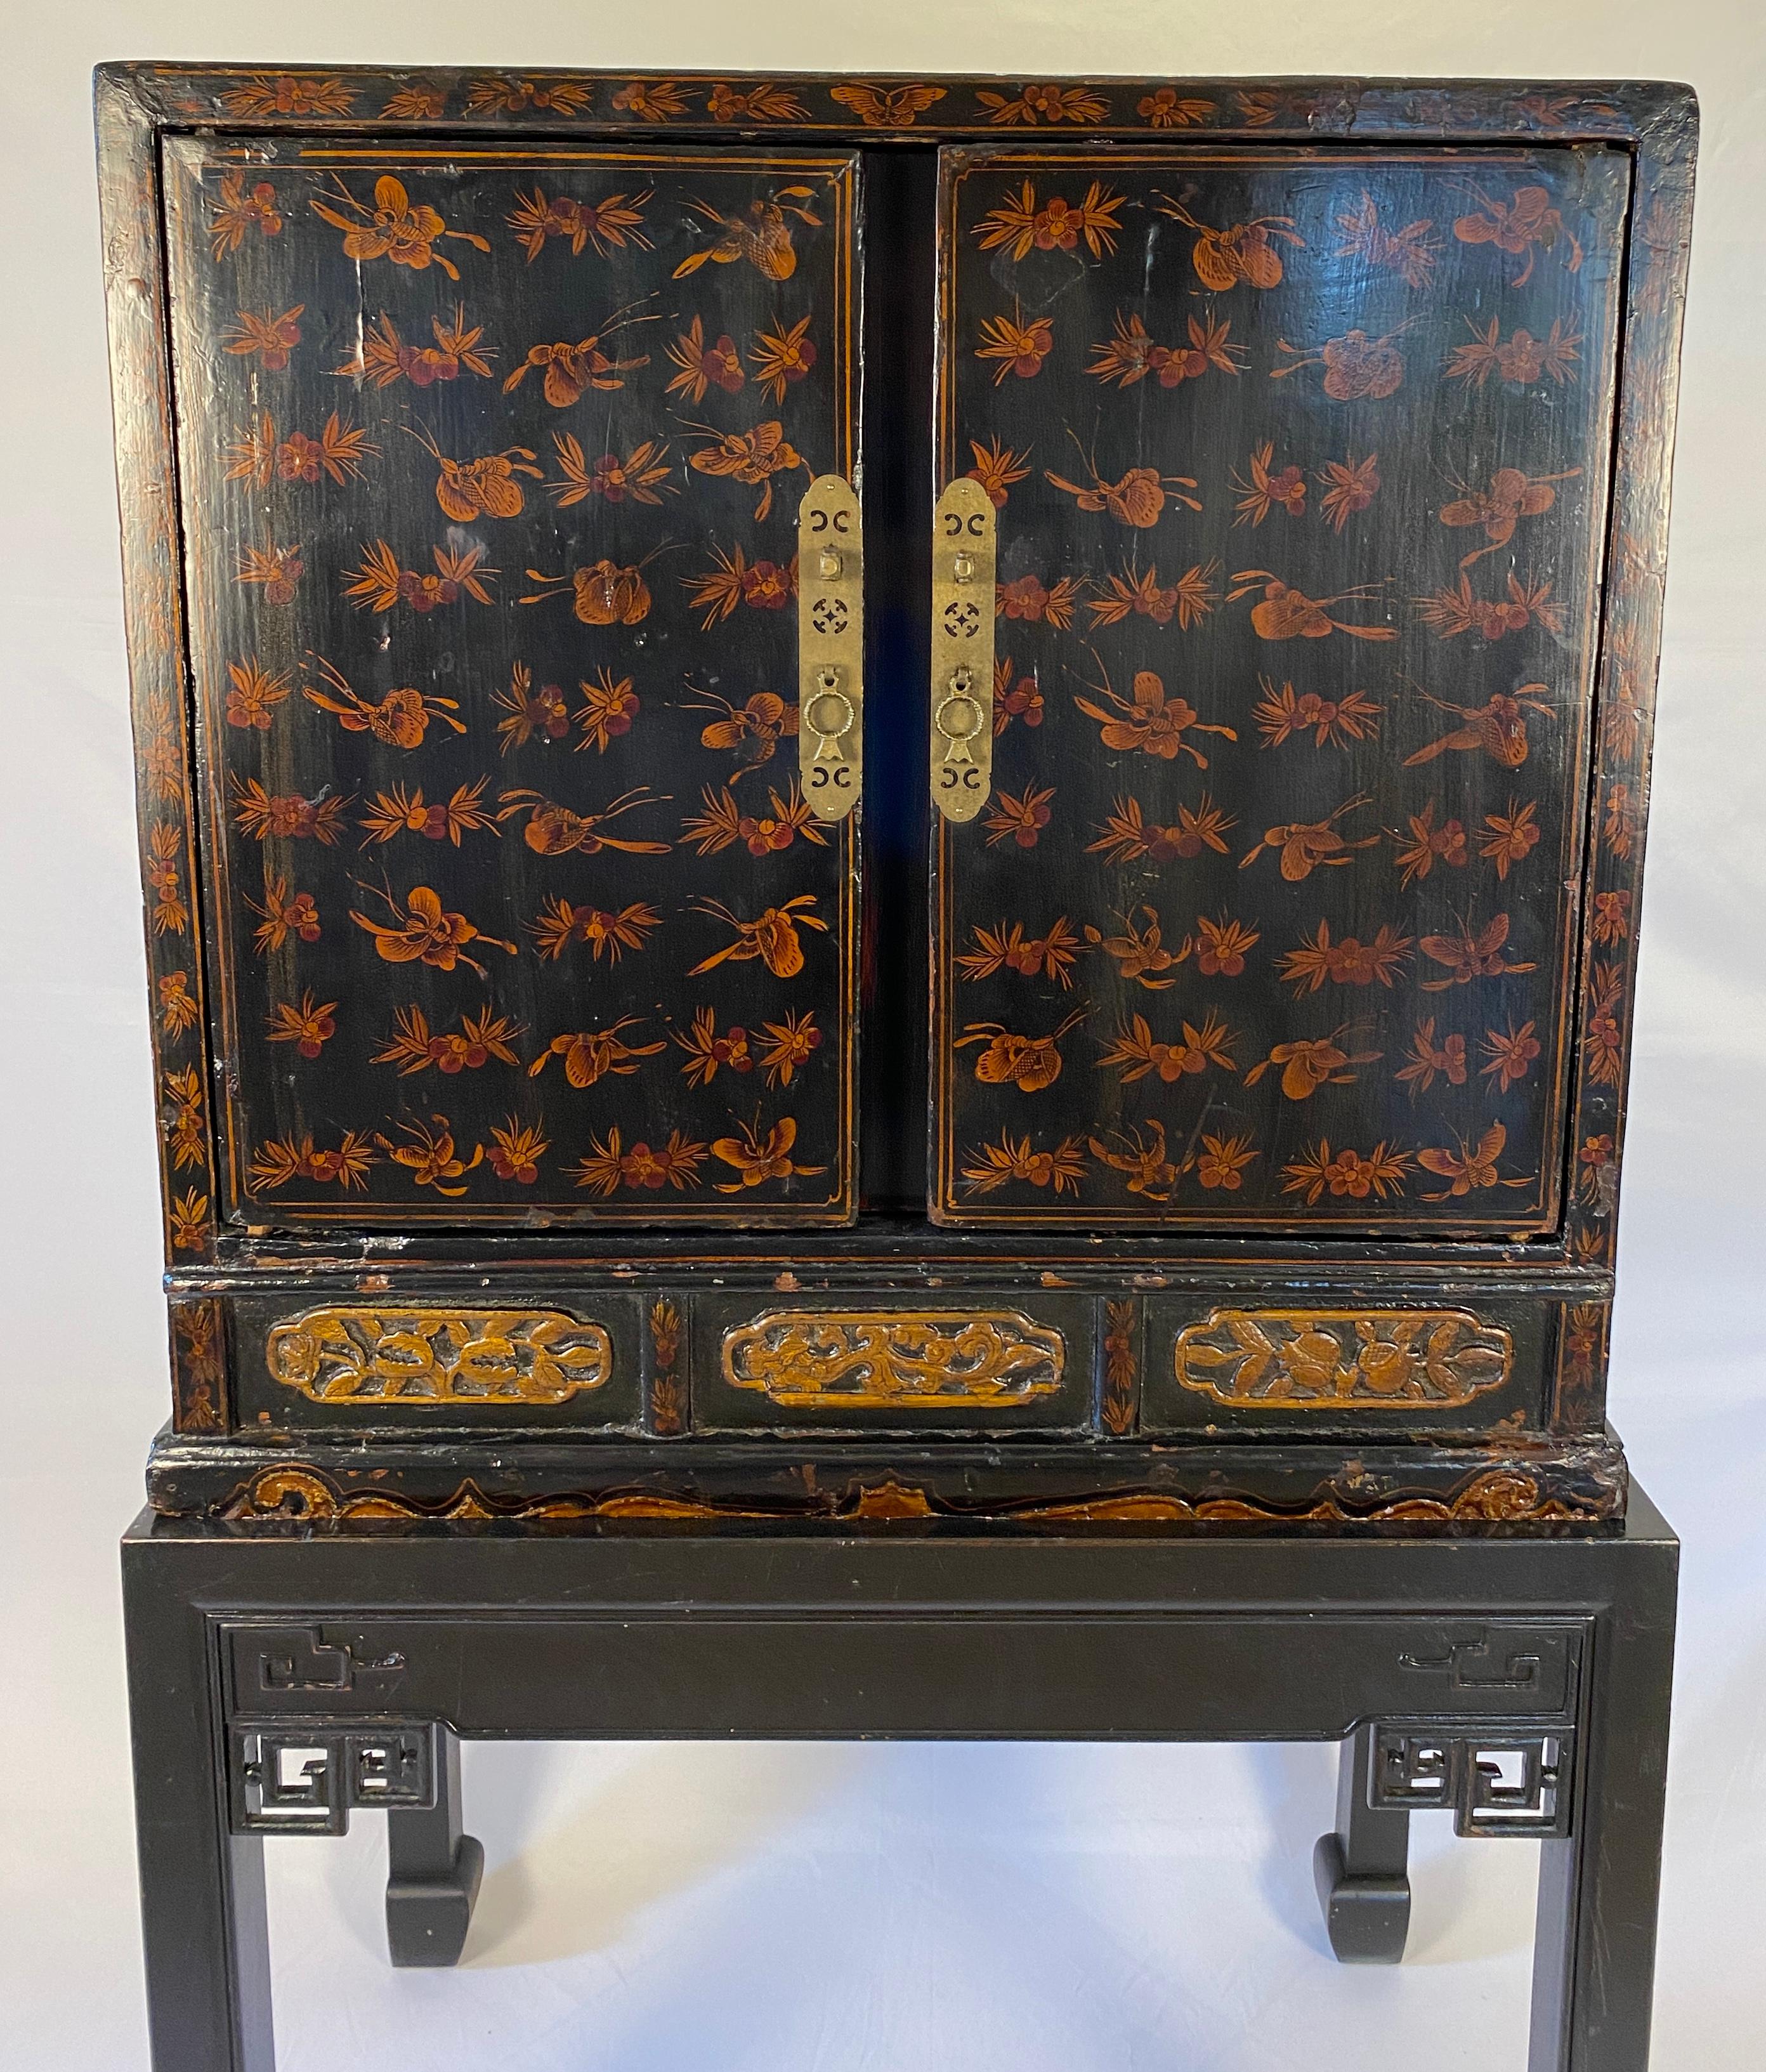 Eine feine Qualität 19. Jahrhundert chinesischen rot lackiert Qing-Dynastie Kabinett mit Chinoiserie-Dekor. Chinese Dry Bar Cabinet. 

Dieses handgefertigte zweiteilige chinesische rot lackierte Kabinett aus der Qing-Dynastie des 19. Jahrhunderts